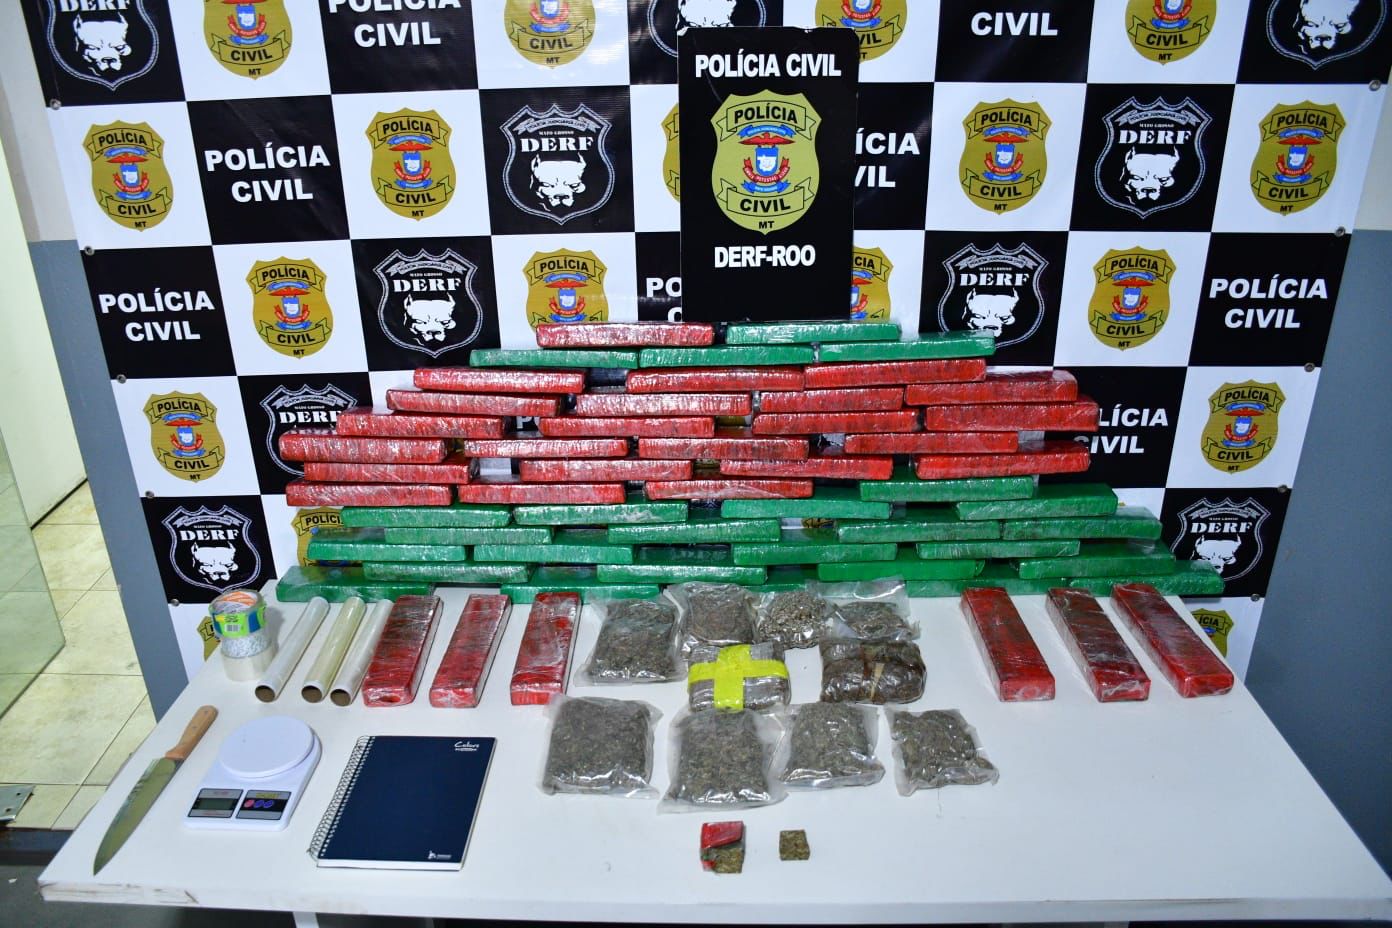 Policia apreende 55 tabletes de maconha em residencia no interior de Mato Grosso